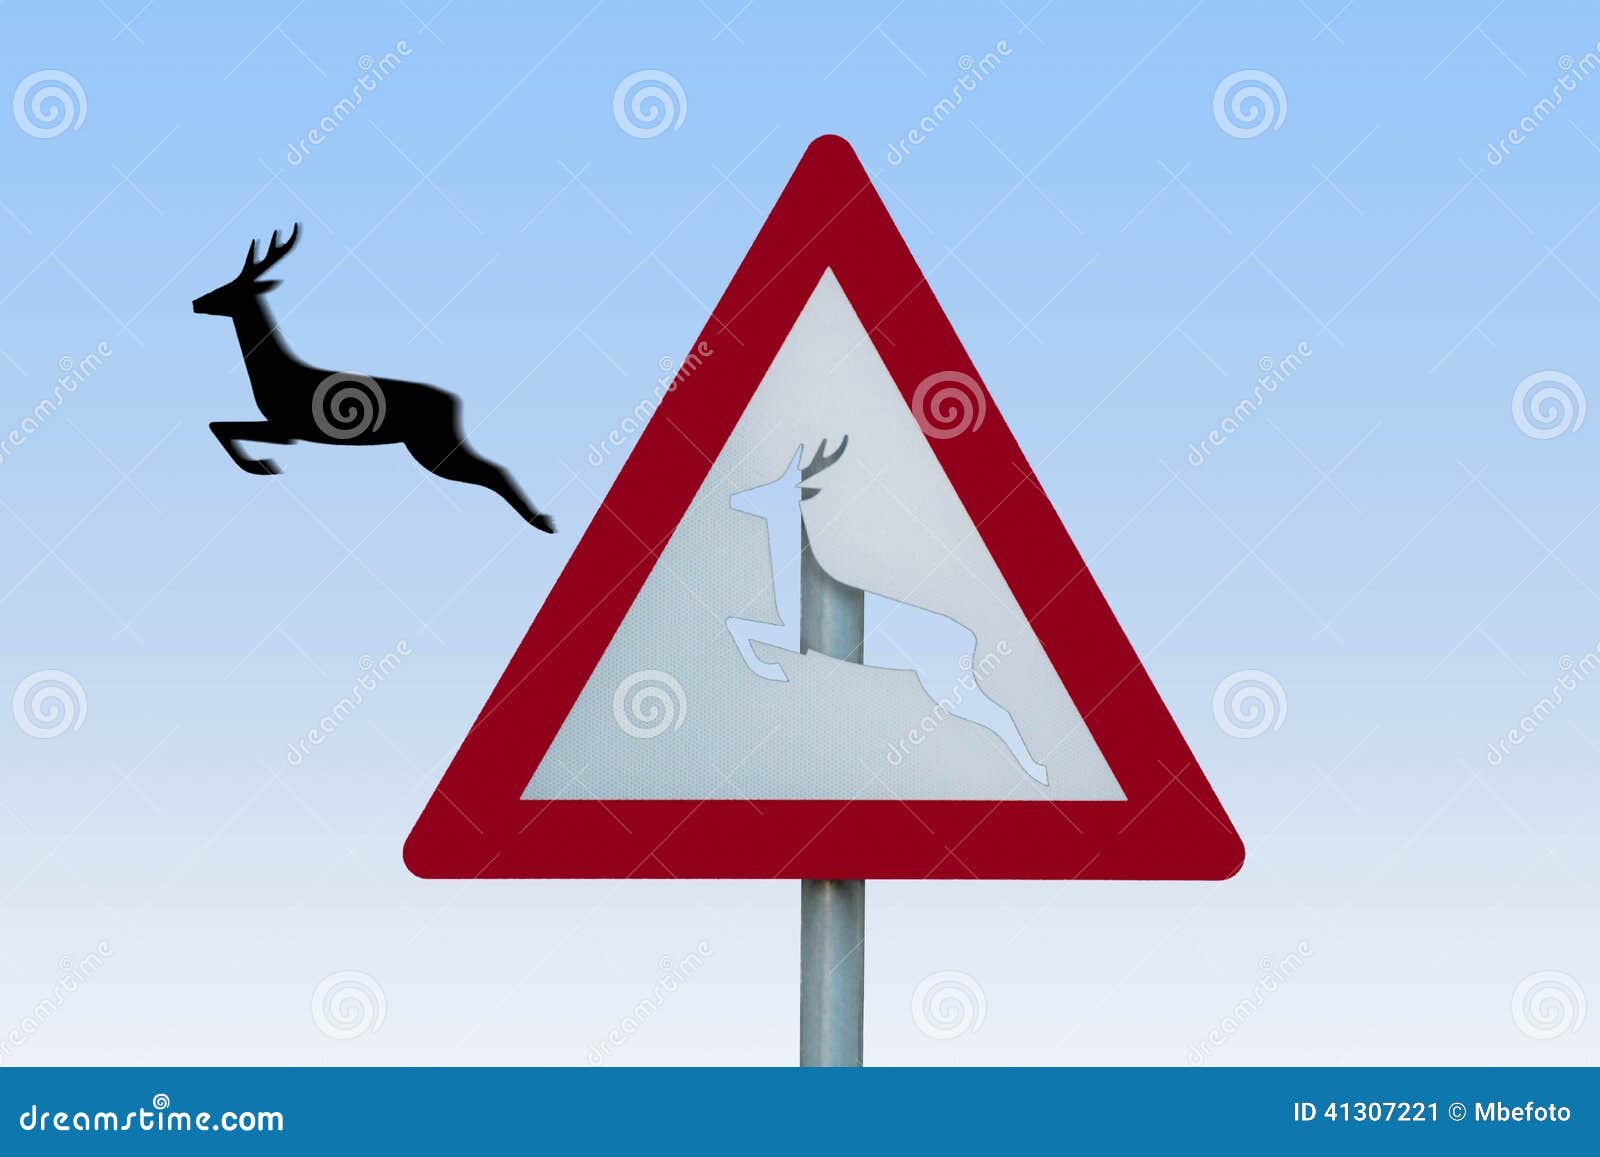 Дорожный знак олень. Знак олени на дороге. Дорожные знаки с животными олень. Российский дорожный знак с оленем.